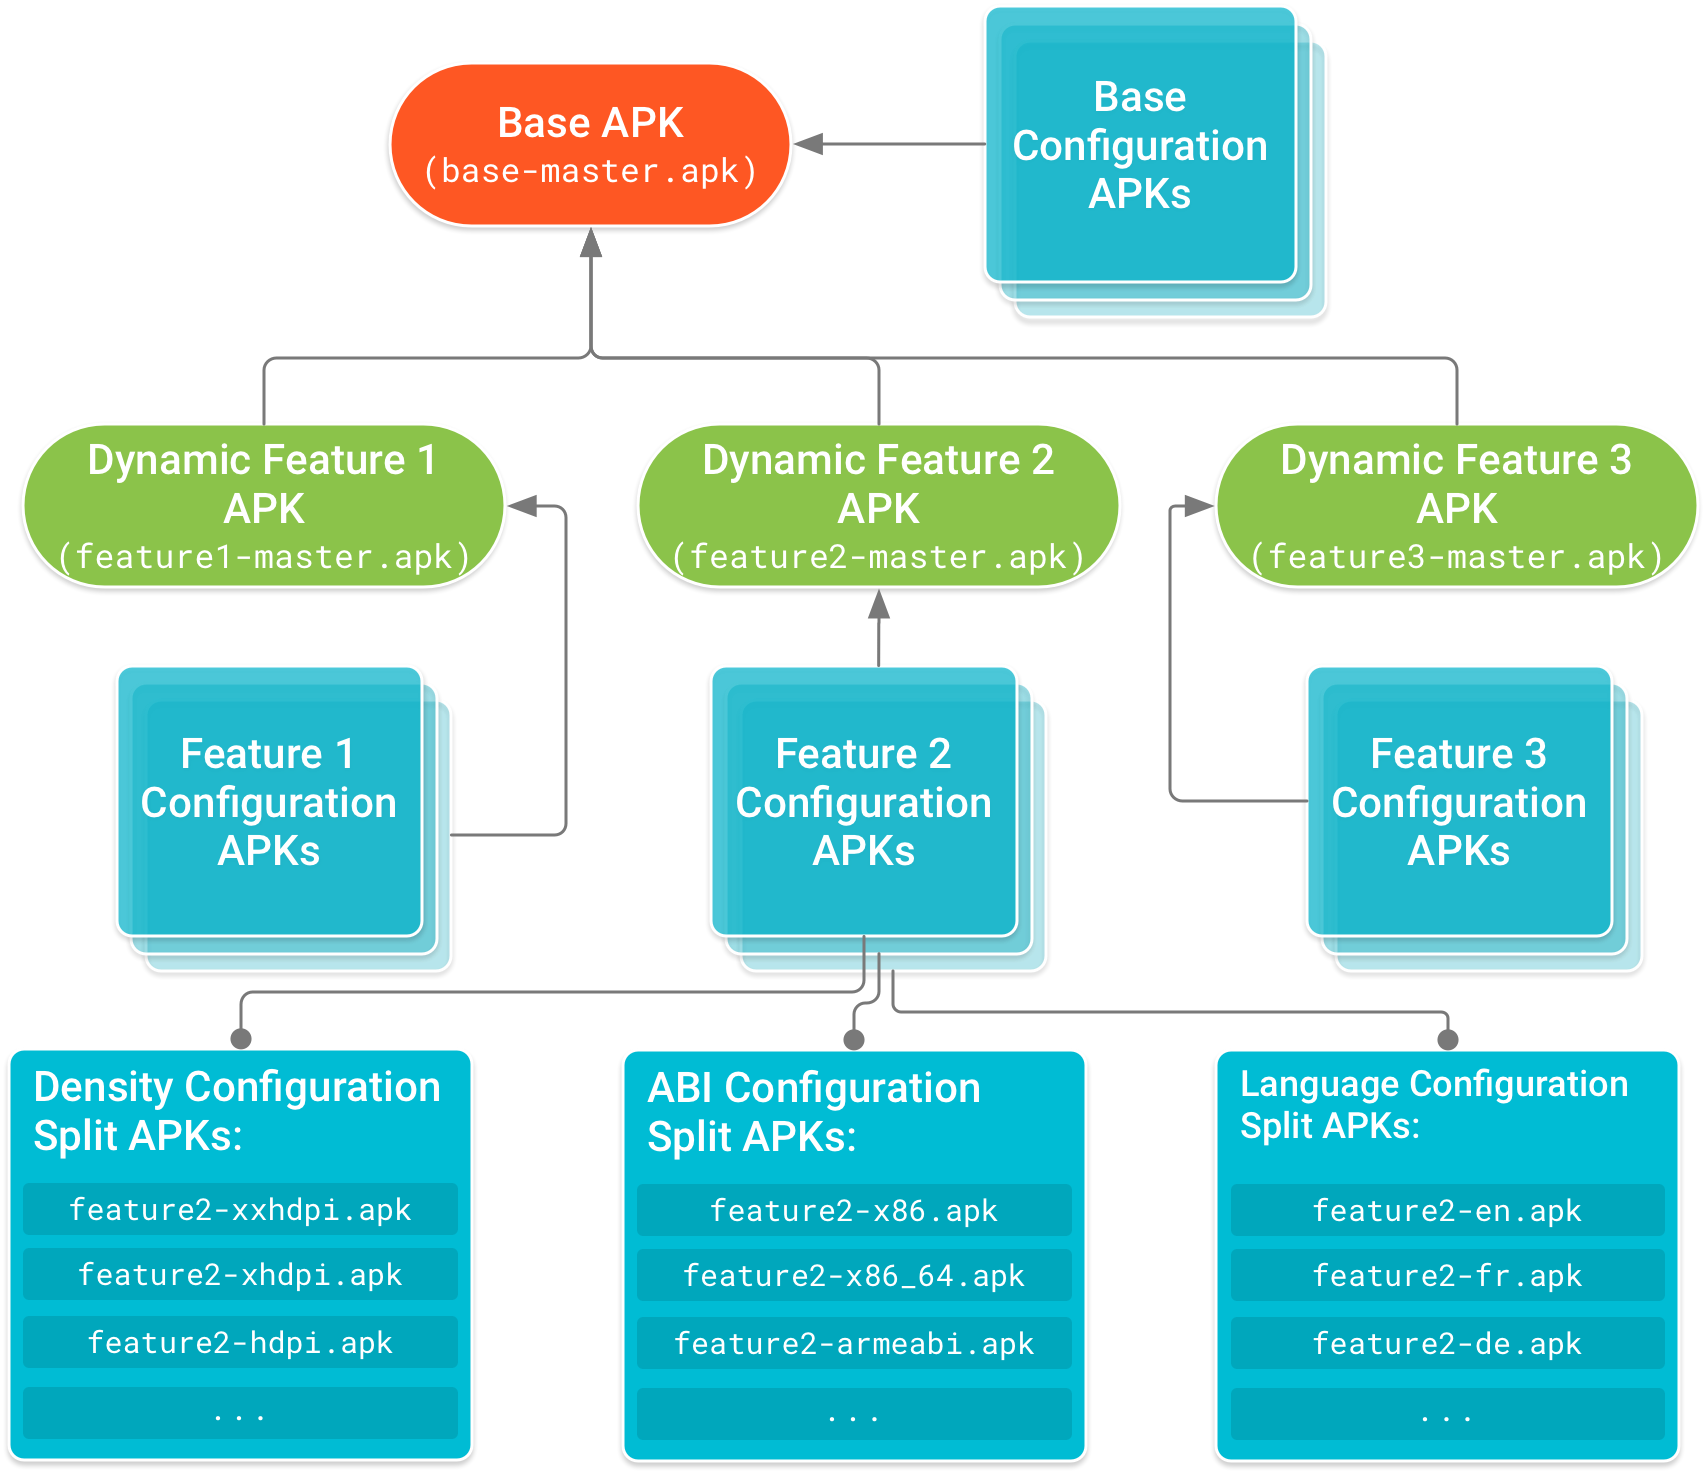 基本 APK 位于树的头部，并有功能模块 APK 依赖于基本 APK。配置 APK 构成依赖关系树的叶节点，此类 APK 中包含了基本 APK 和各个功能模块 APK 的设备配置专用代码和资源。